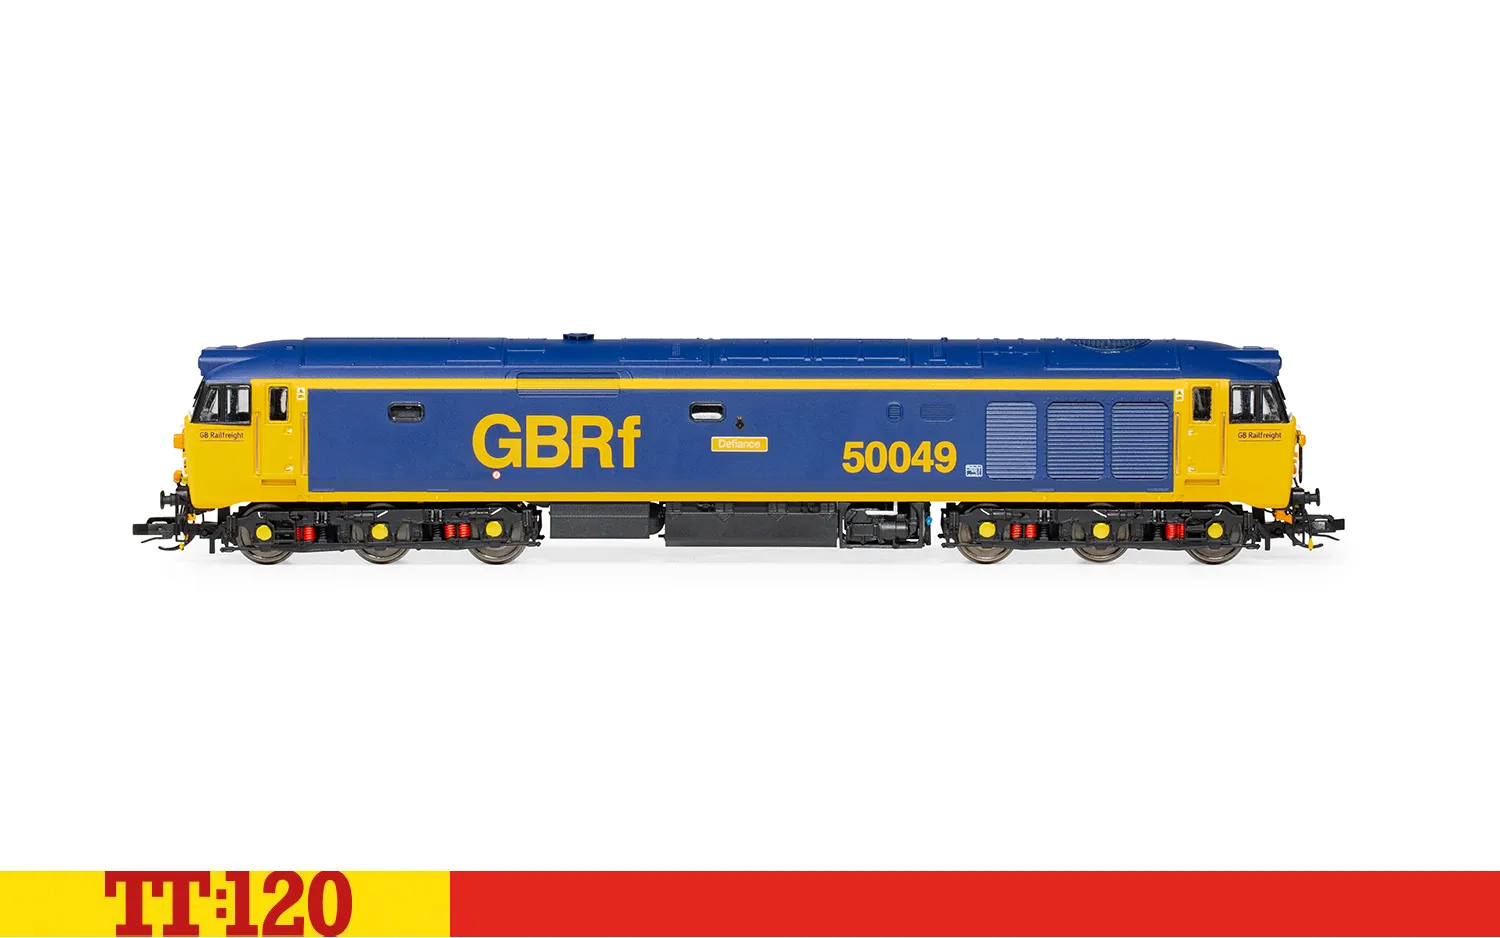 GBRf, Classe 50, Co-Co, 50049 'Defiance' - Époque 11